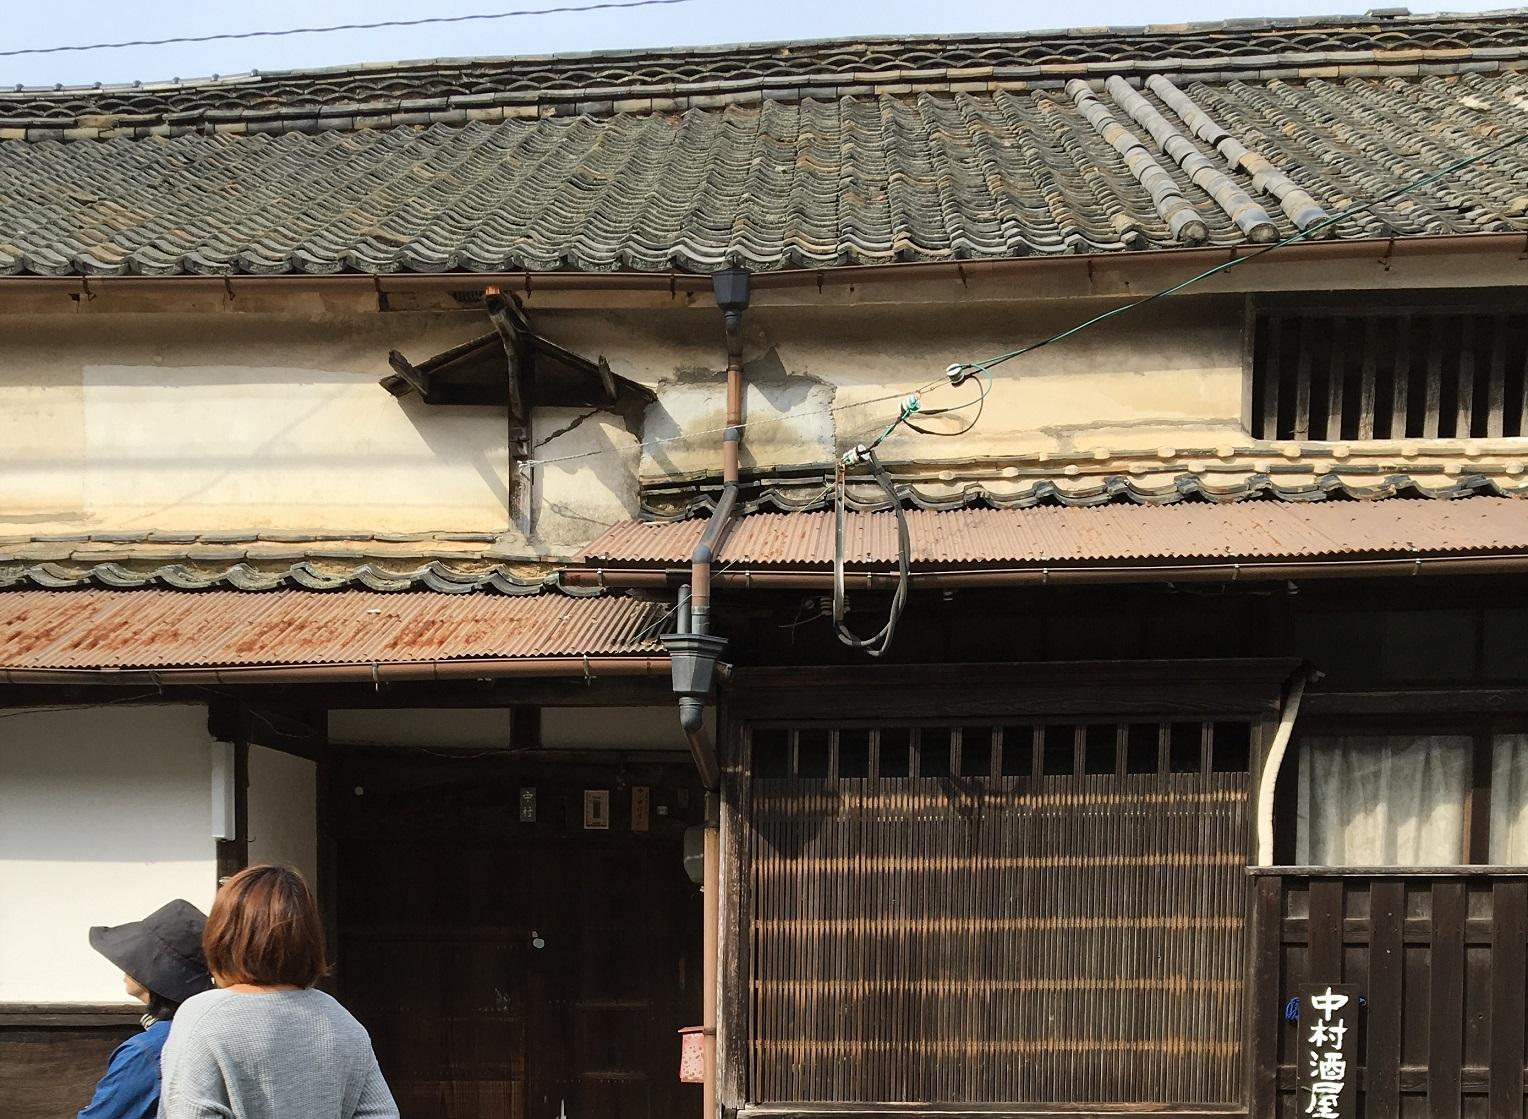 外壁にひびが入っている、江戸時代の中村酒屋の建物の写真